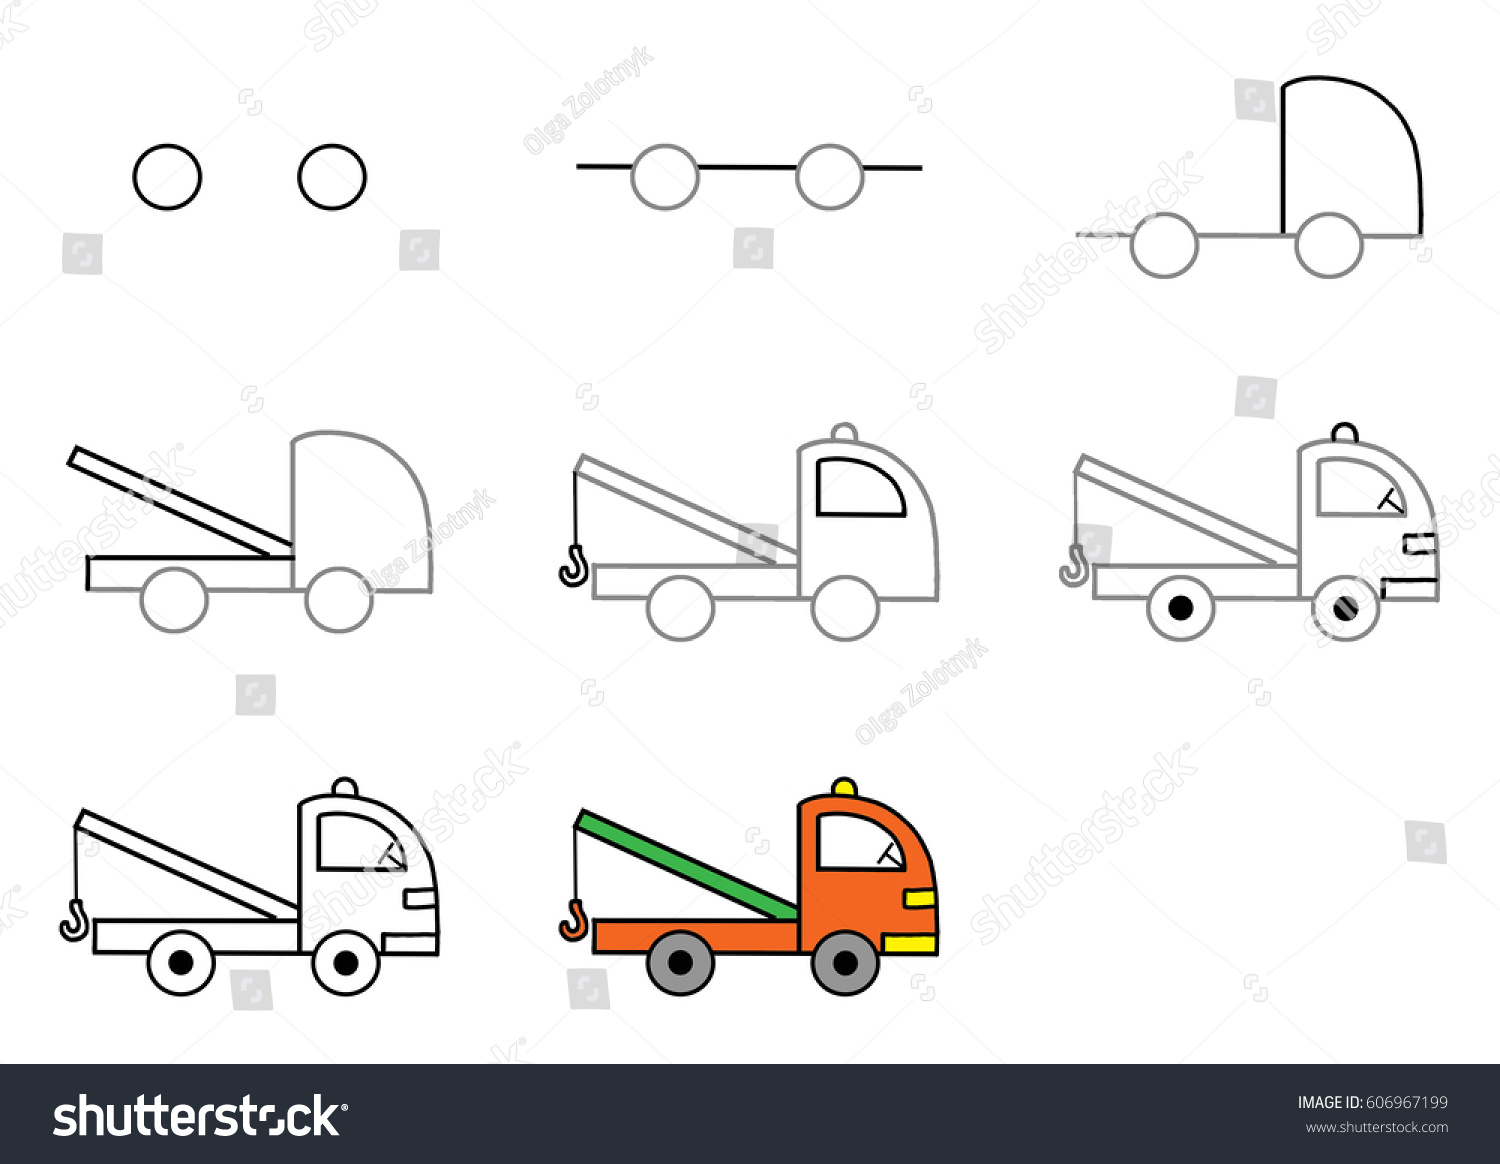 Схема рисования грузовой машины в средней группе